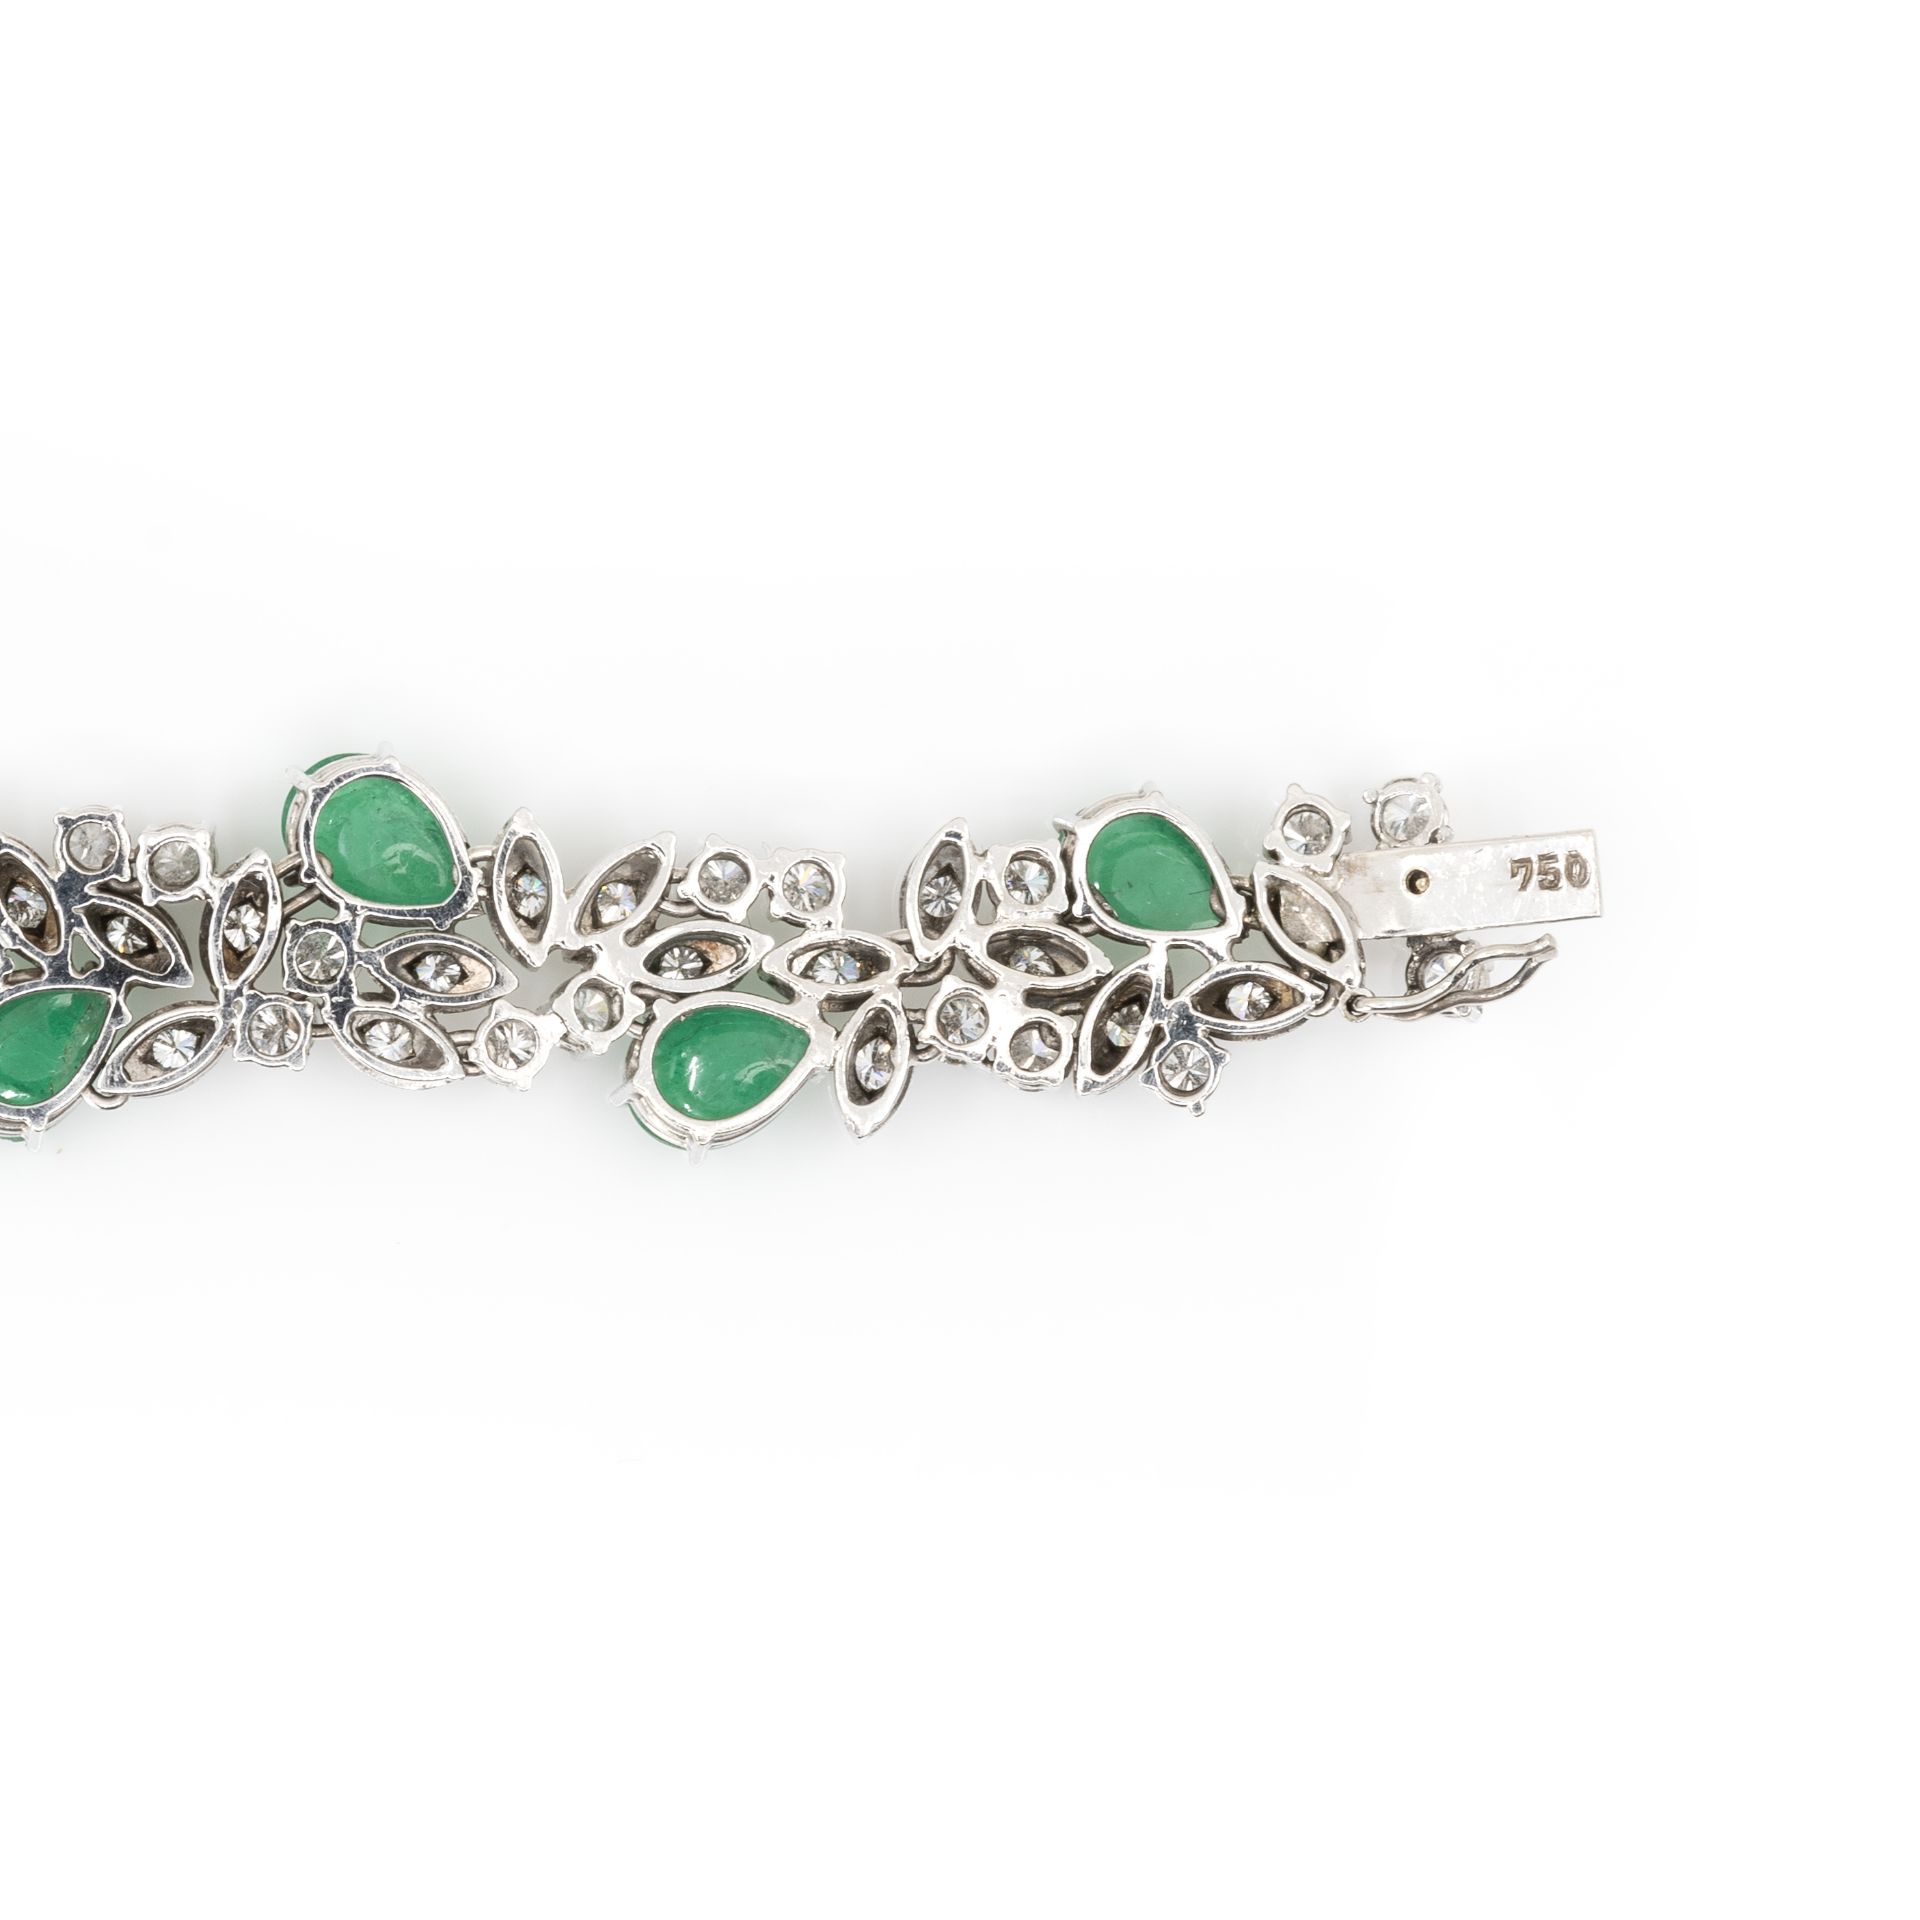 Collier und Armband mit Smaragd-Diamantbesatz - Bild 8 aus 8